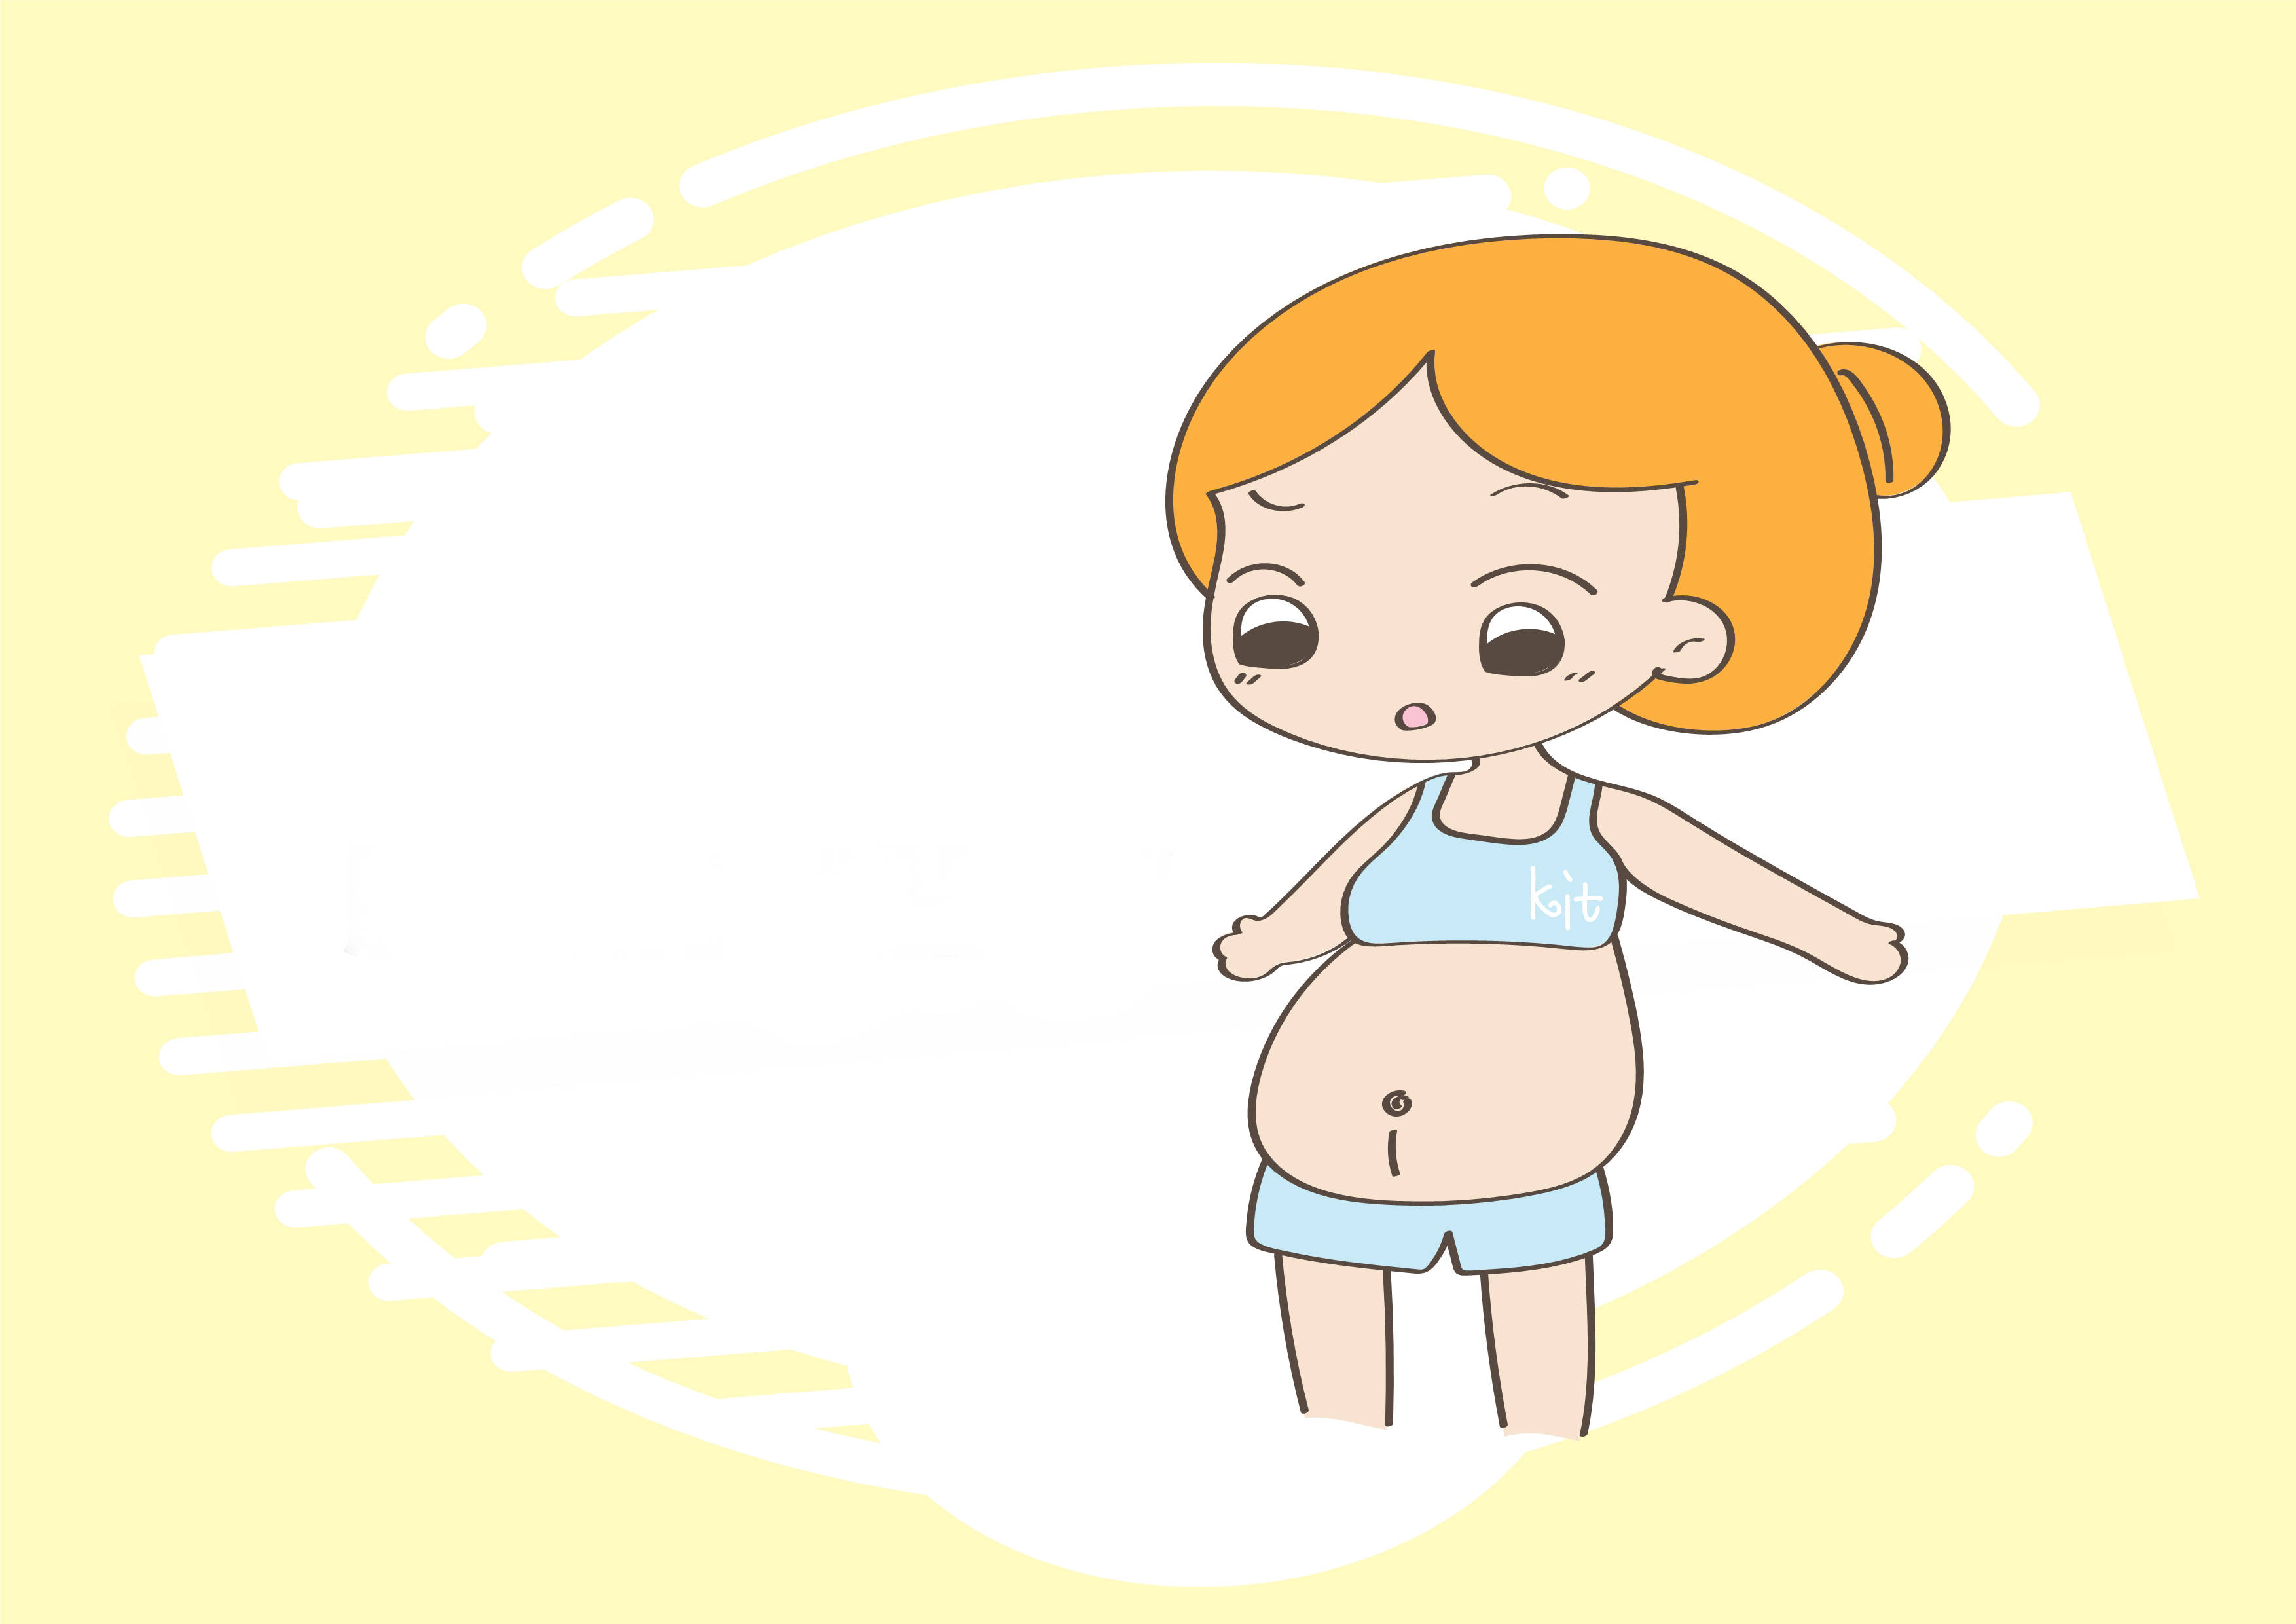 孕妇肚子卡通照片图片